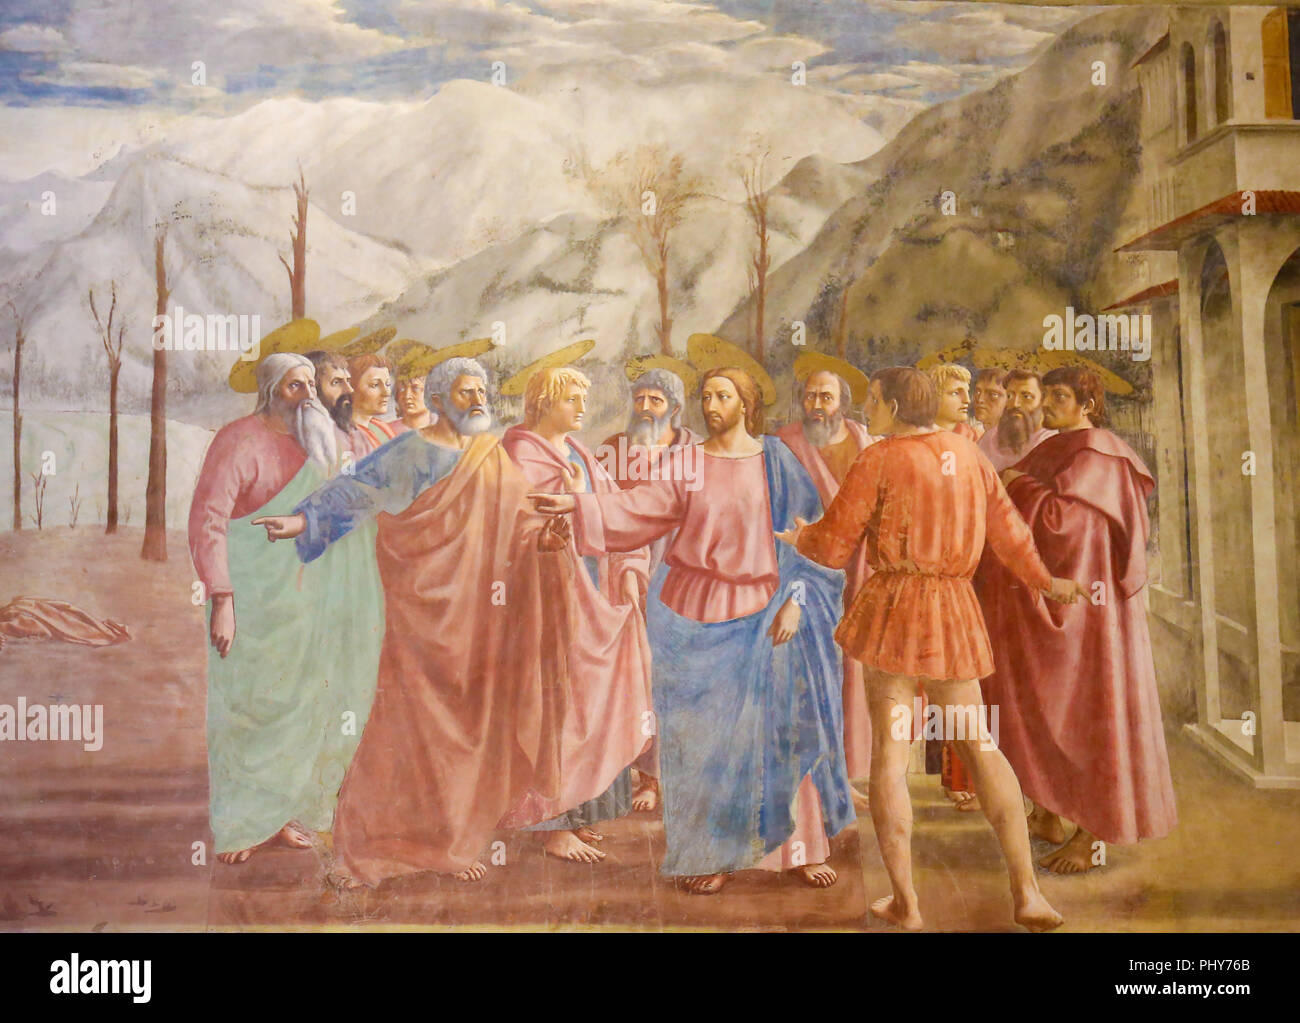 Il tributo di denaro, celebre affresco di Masaccio nella Cappella Brancacci, la 'Sistine Cappella del primo rinascimento in Firenze, Toscana, Italia Foto Stock